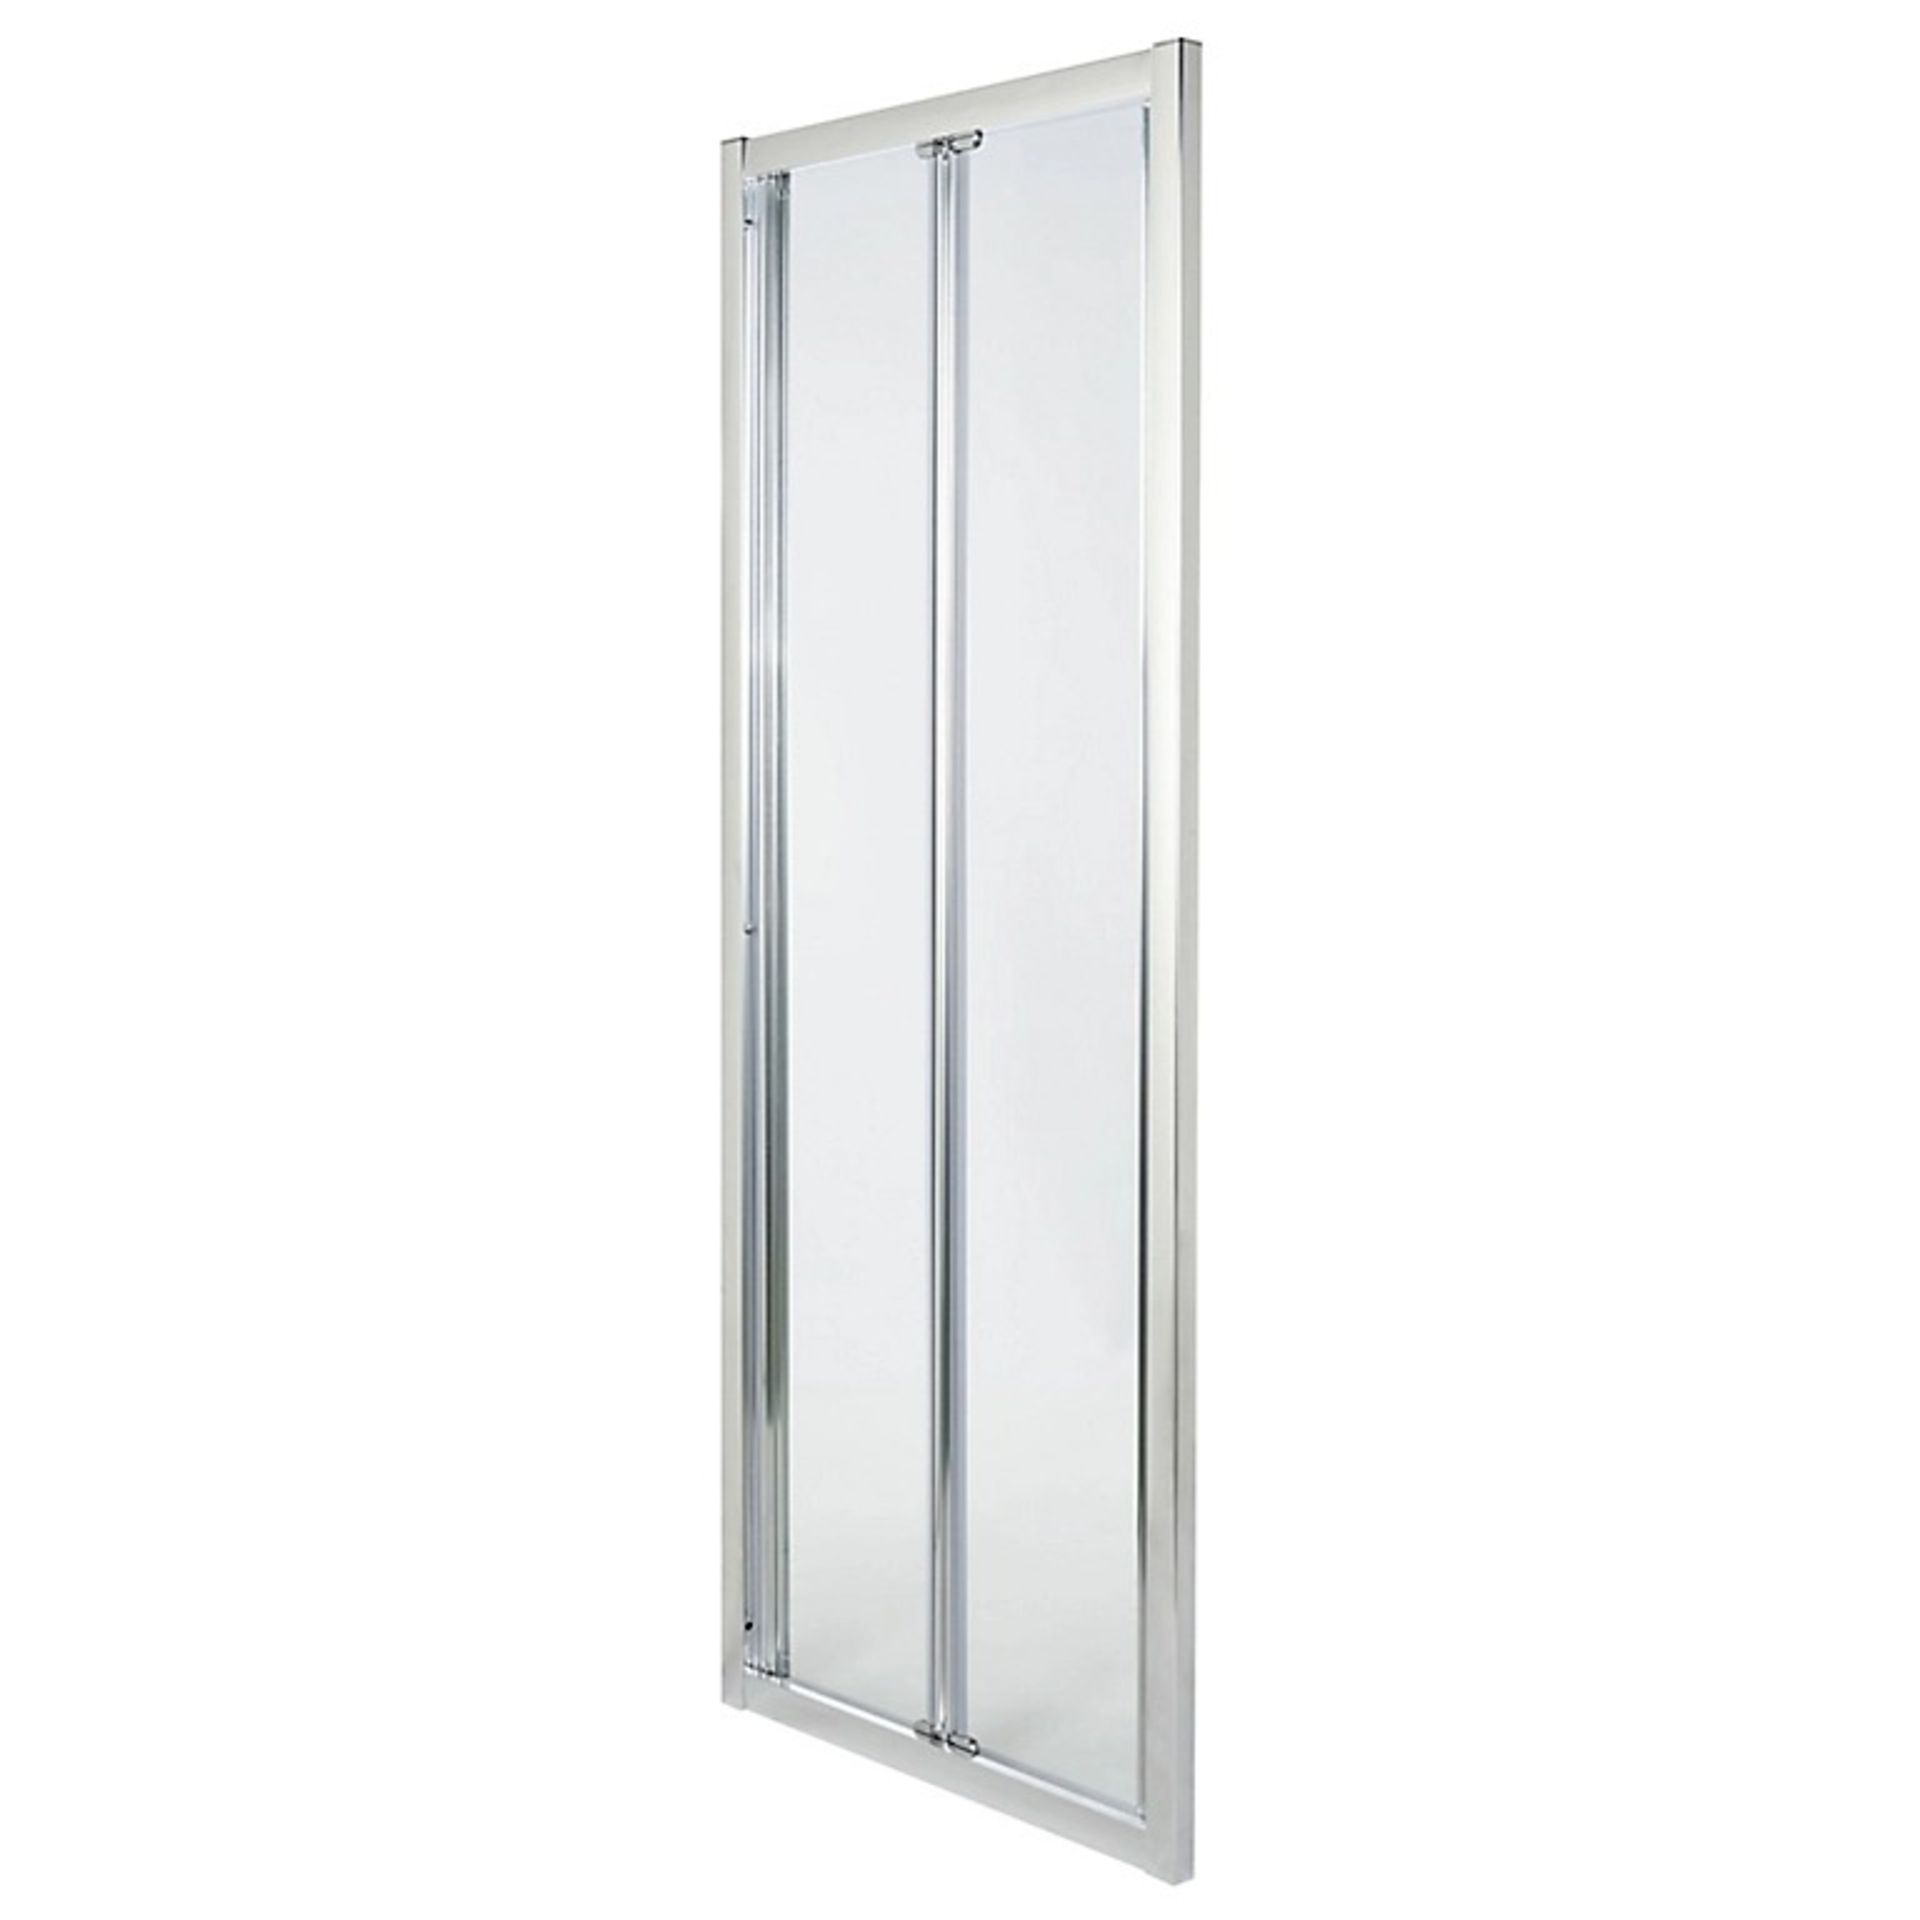 Cooke & Lewis Onega Silver effect Clear Bi-fold Shower Door (H)190cm (W)76cm - ER41